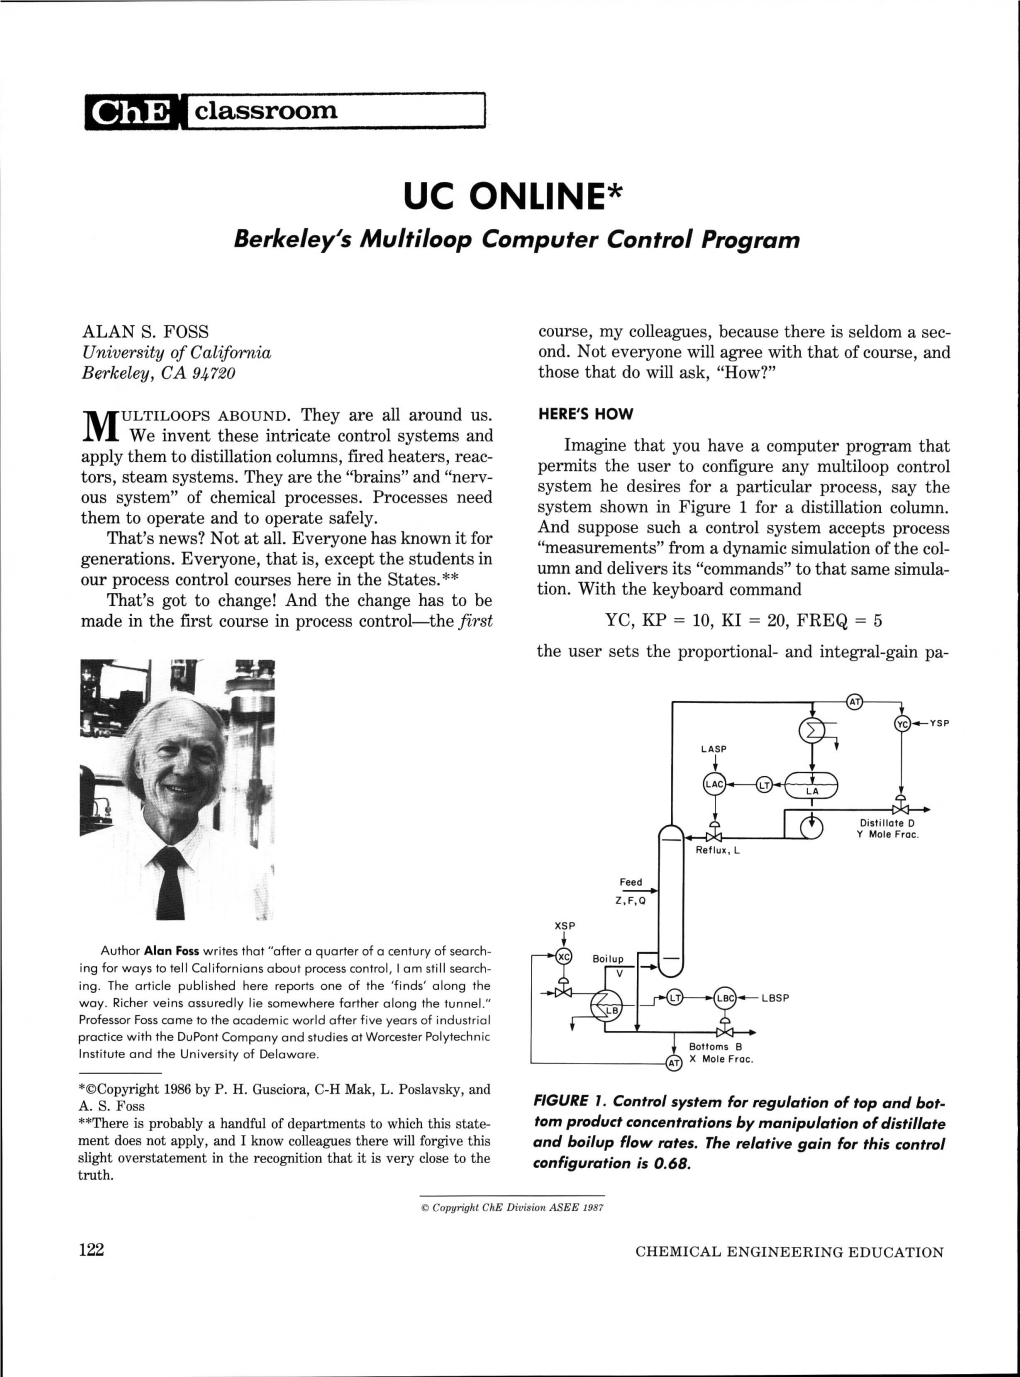 UC ONLINE* Berkeley's Multiloop Computer Control Program